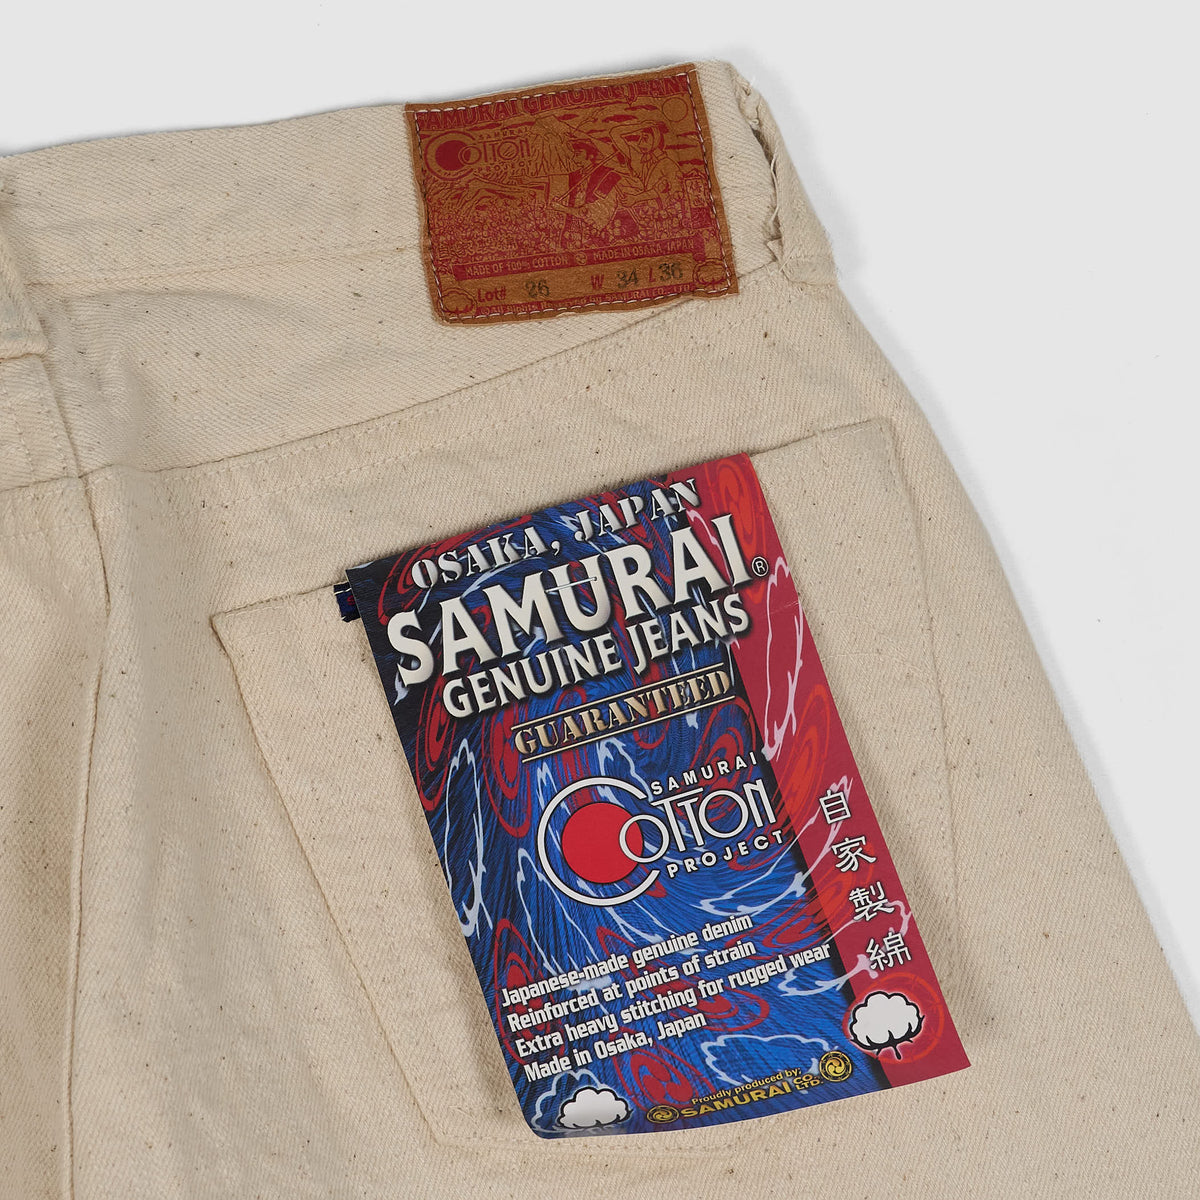 Samurai Jeans 5P Selvage Natural Denim &quot;S710SC-KI&quot; Cotton Project 18oz